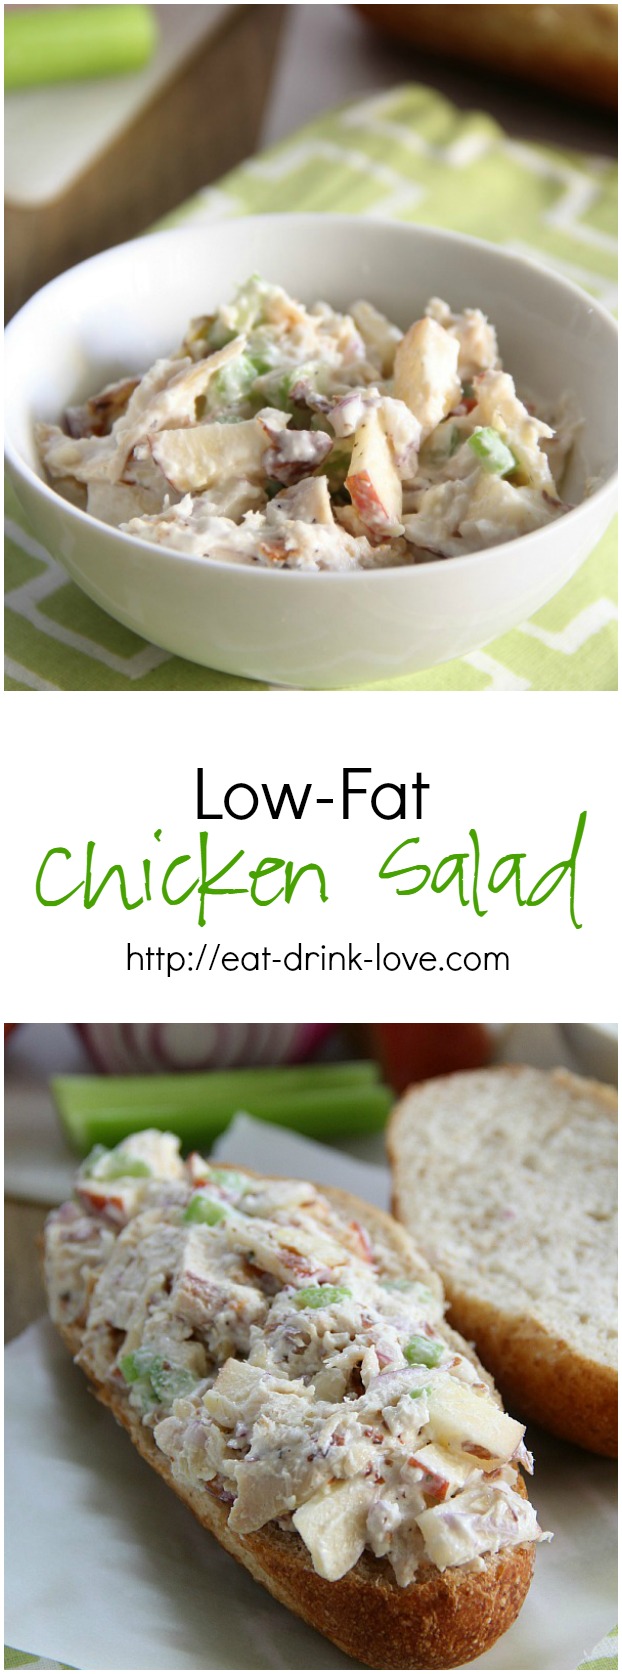 Low-Fat Chicken Salad Sandwich photo collage